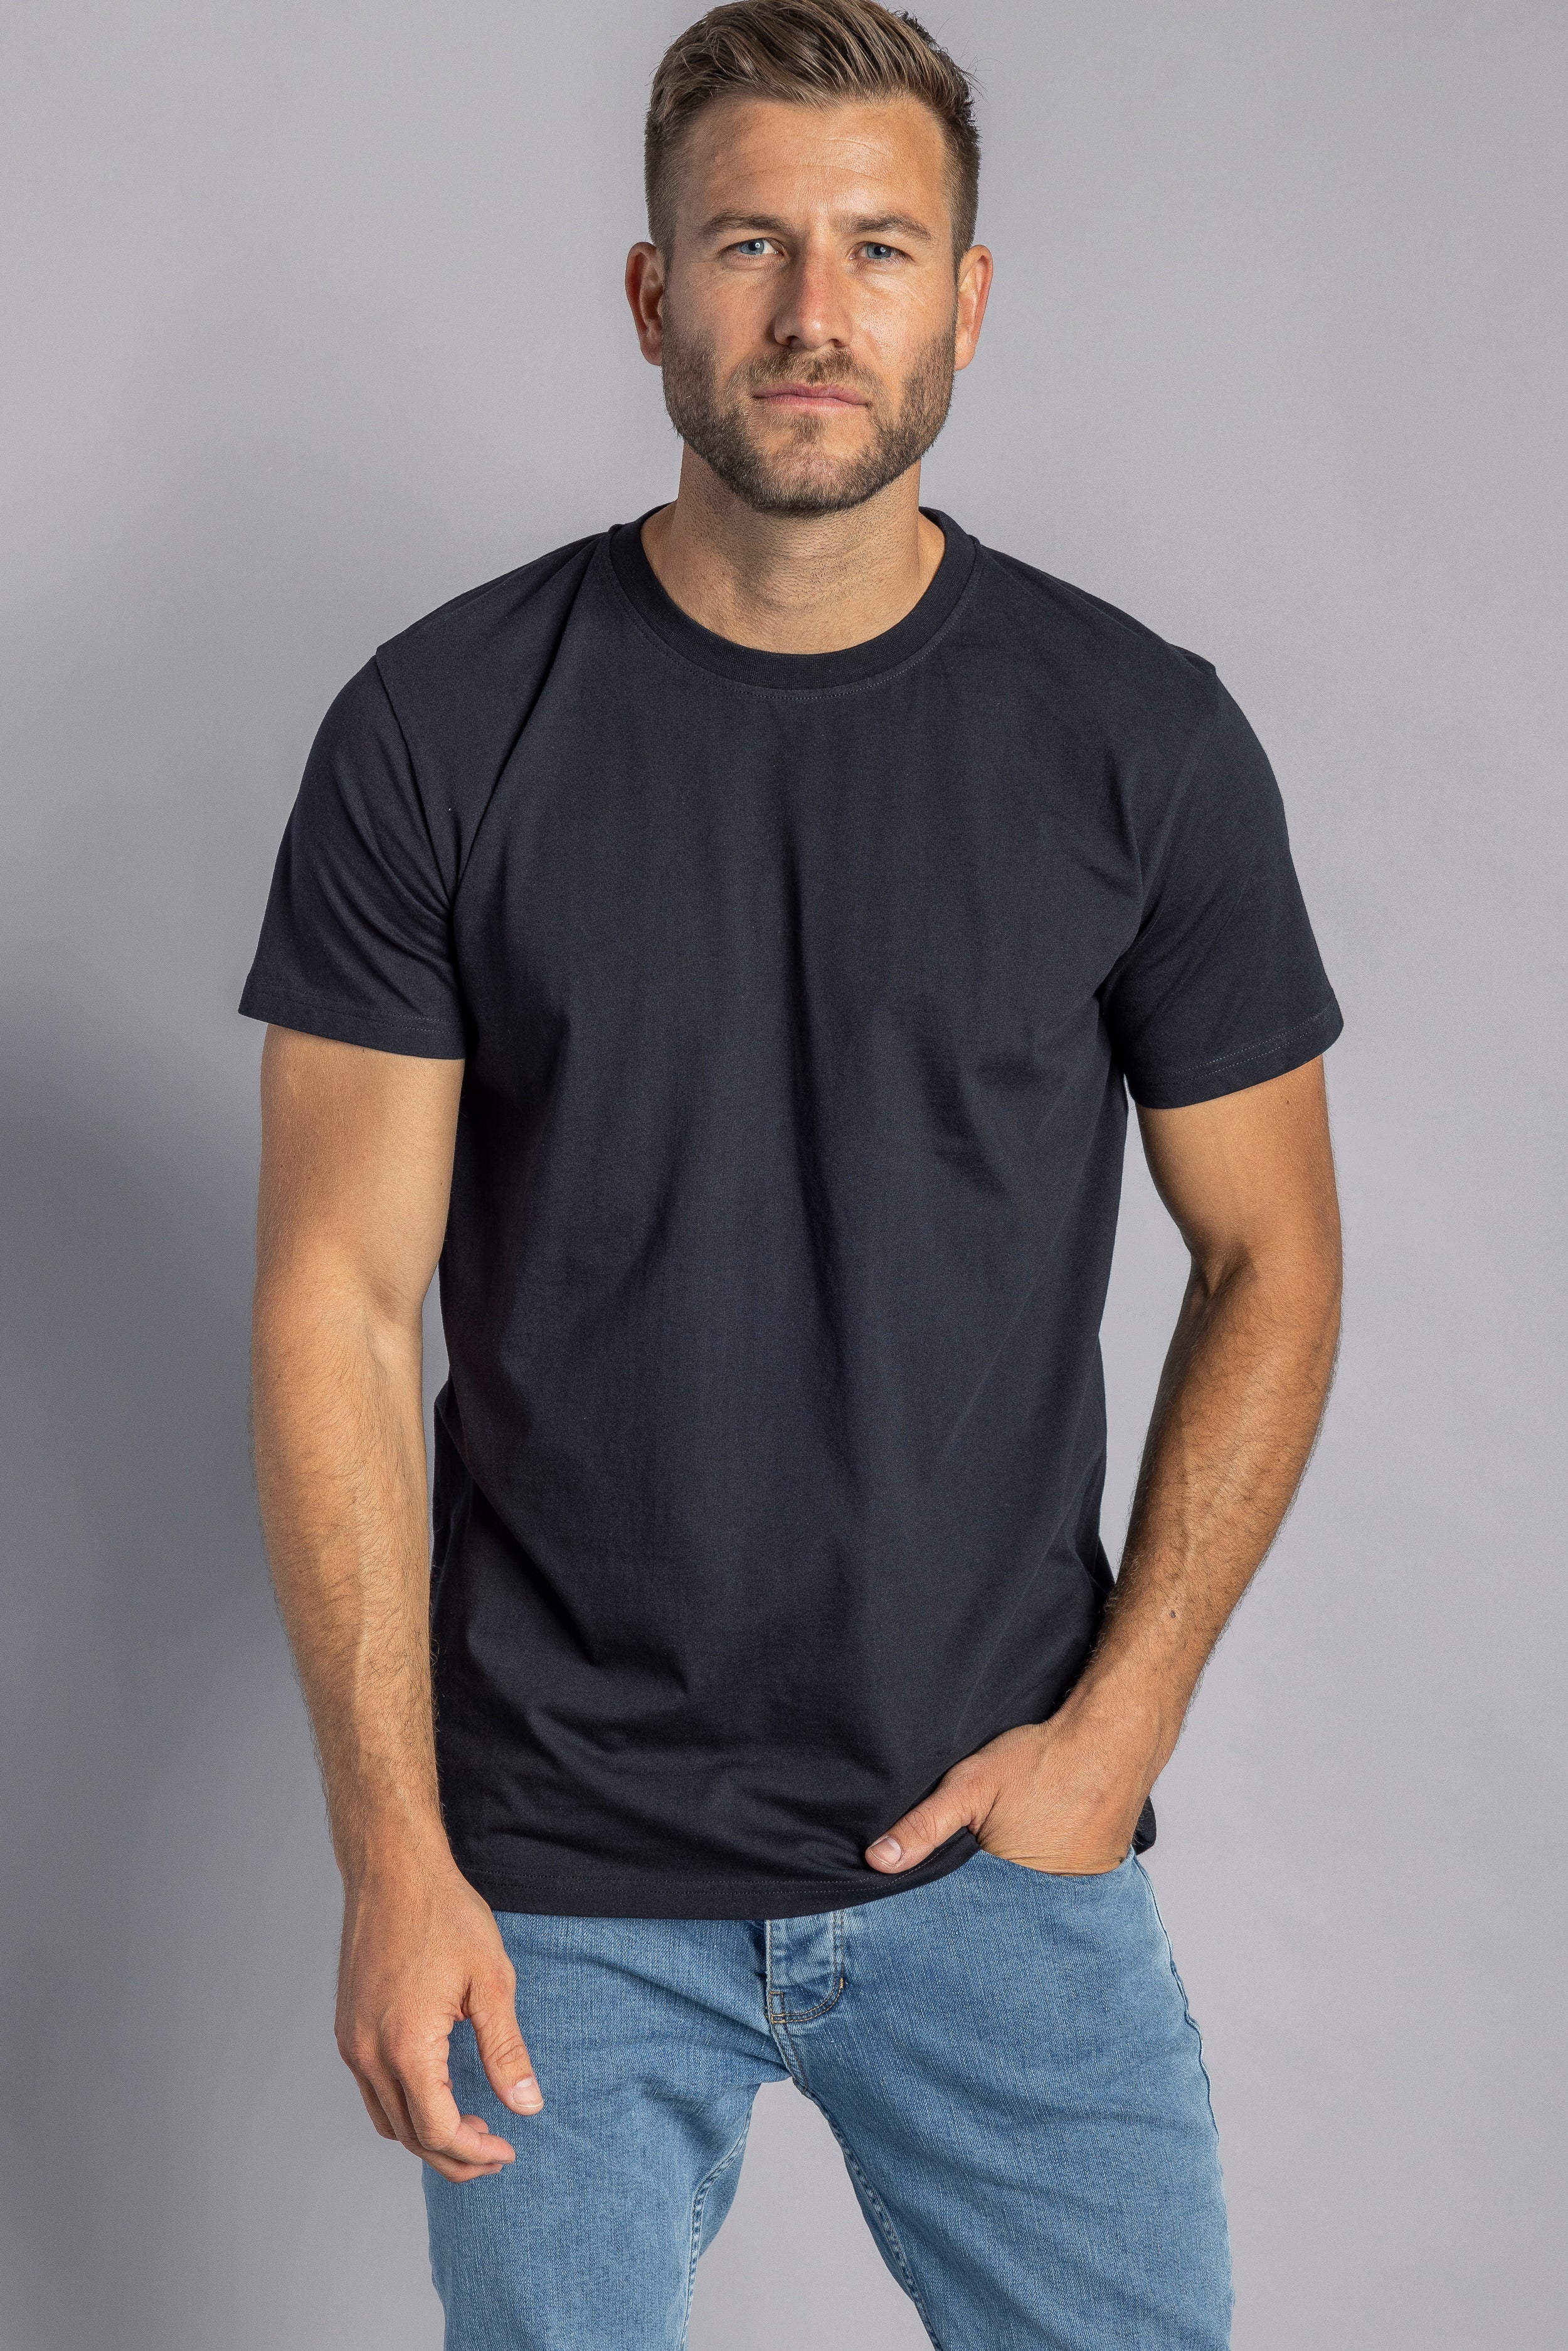 T-shirt Slim Premium Blank noir en coton 100% biologique de DIRTS